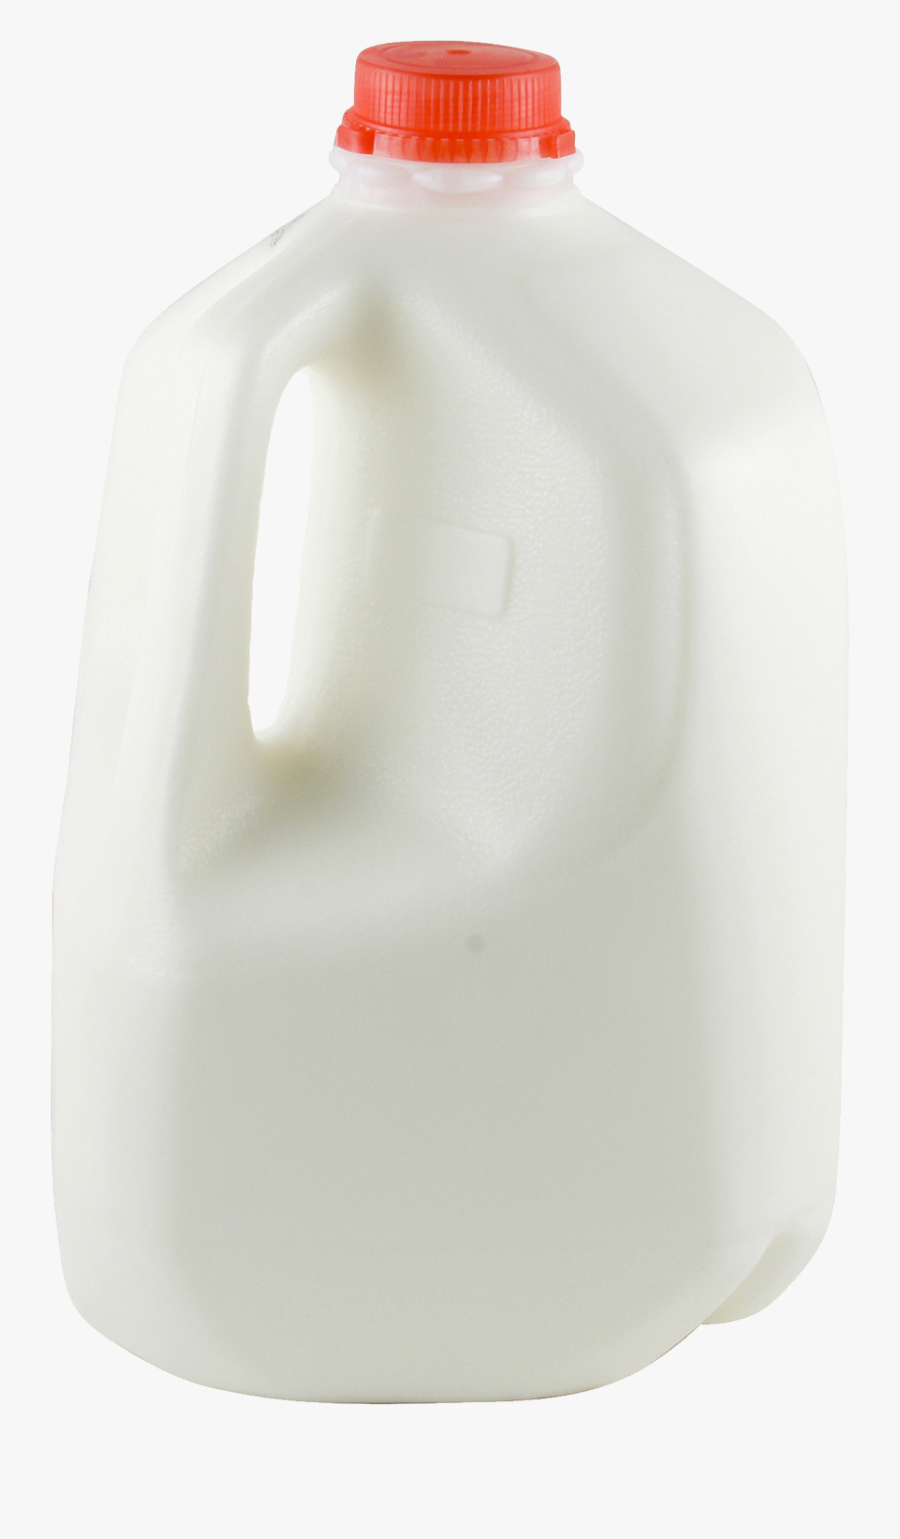 Plastic Milk Bottle Png, Transparent Clipart